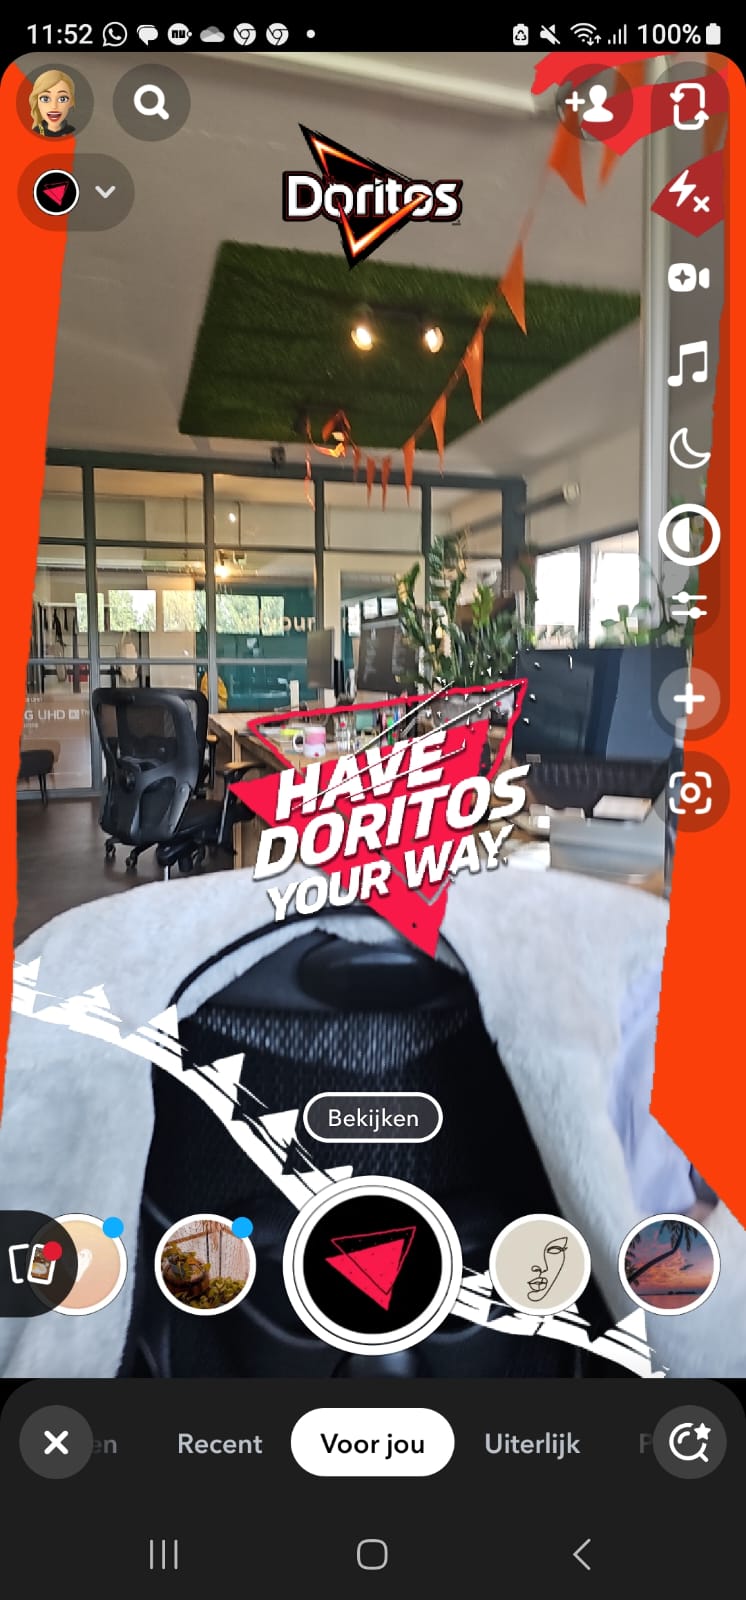 Een filters & lenzen snapchat advertentie van Doritos